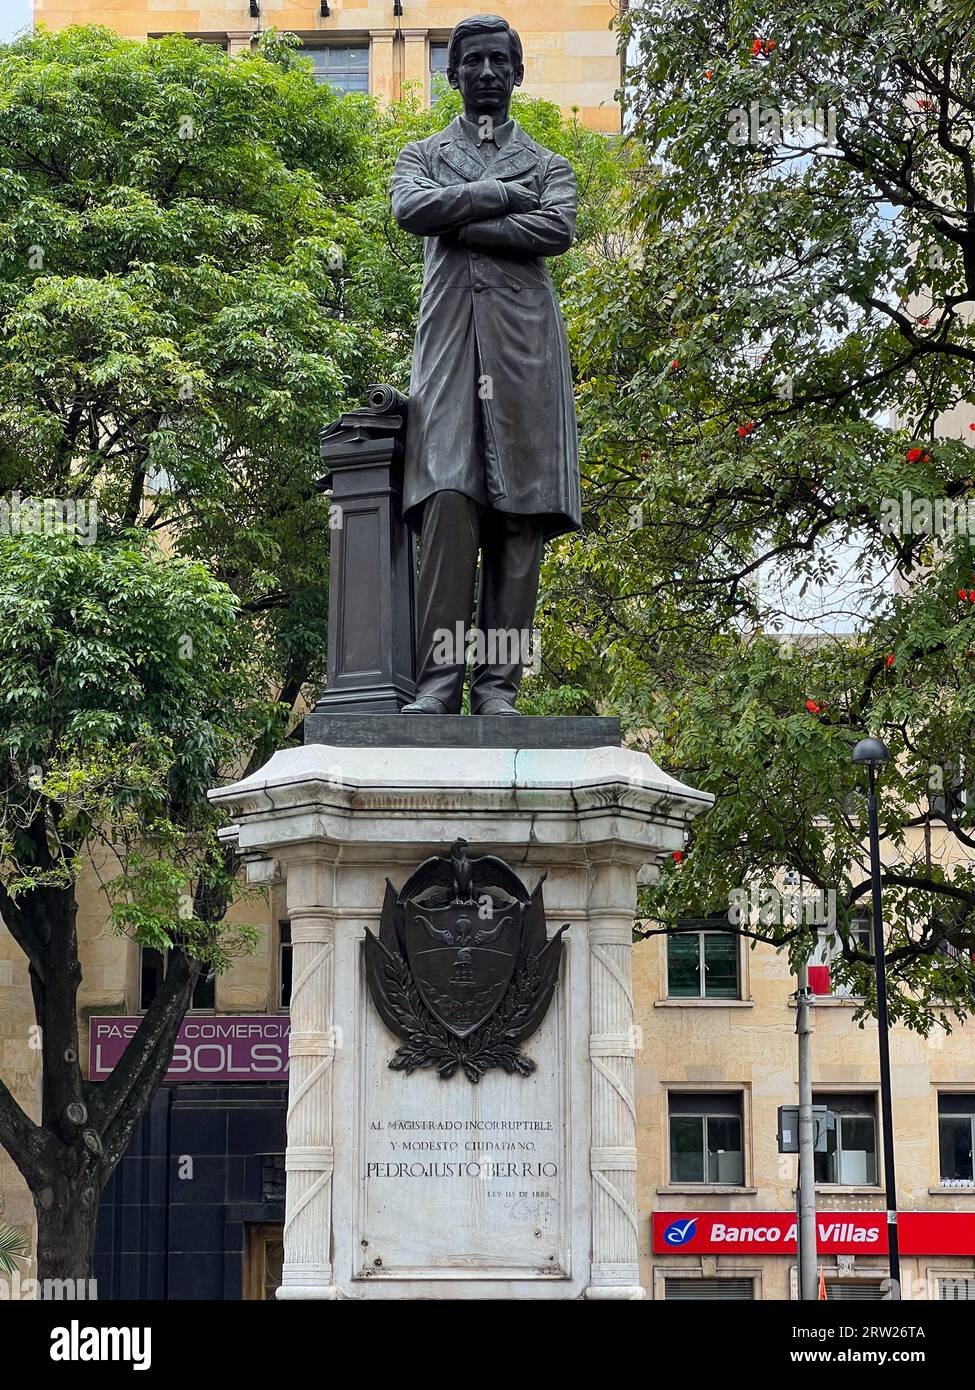 Medellin, Kolumbien - 14. April 2022: Denkmal für Pedro Justo Berrio, einen kolumbianischen Rechtsanwalt, Soldaten und Politiker in Medellin, Kolumbien. Stockfoto